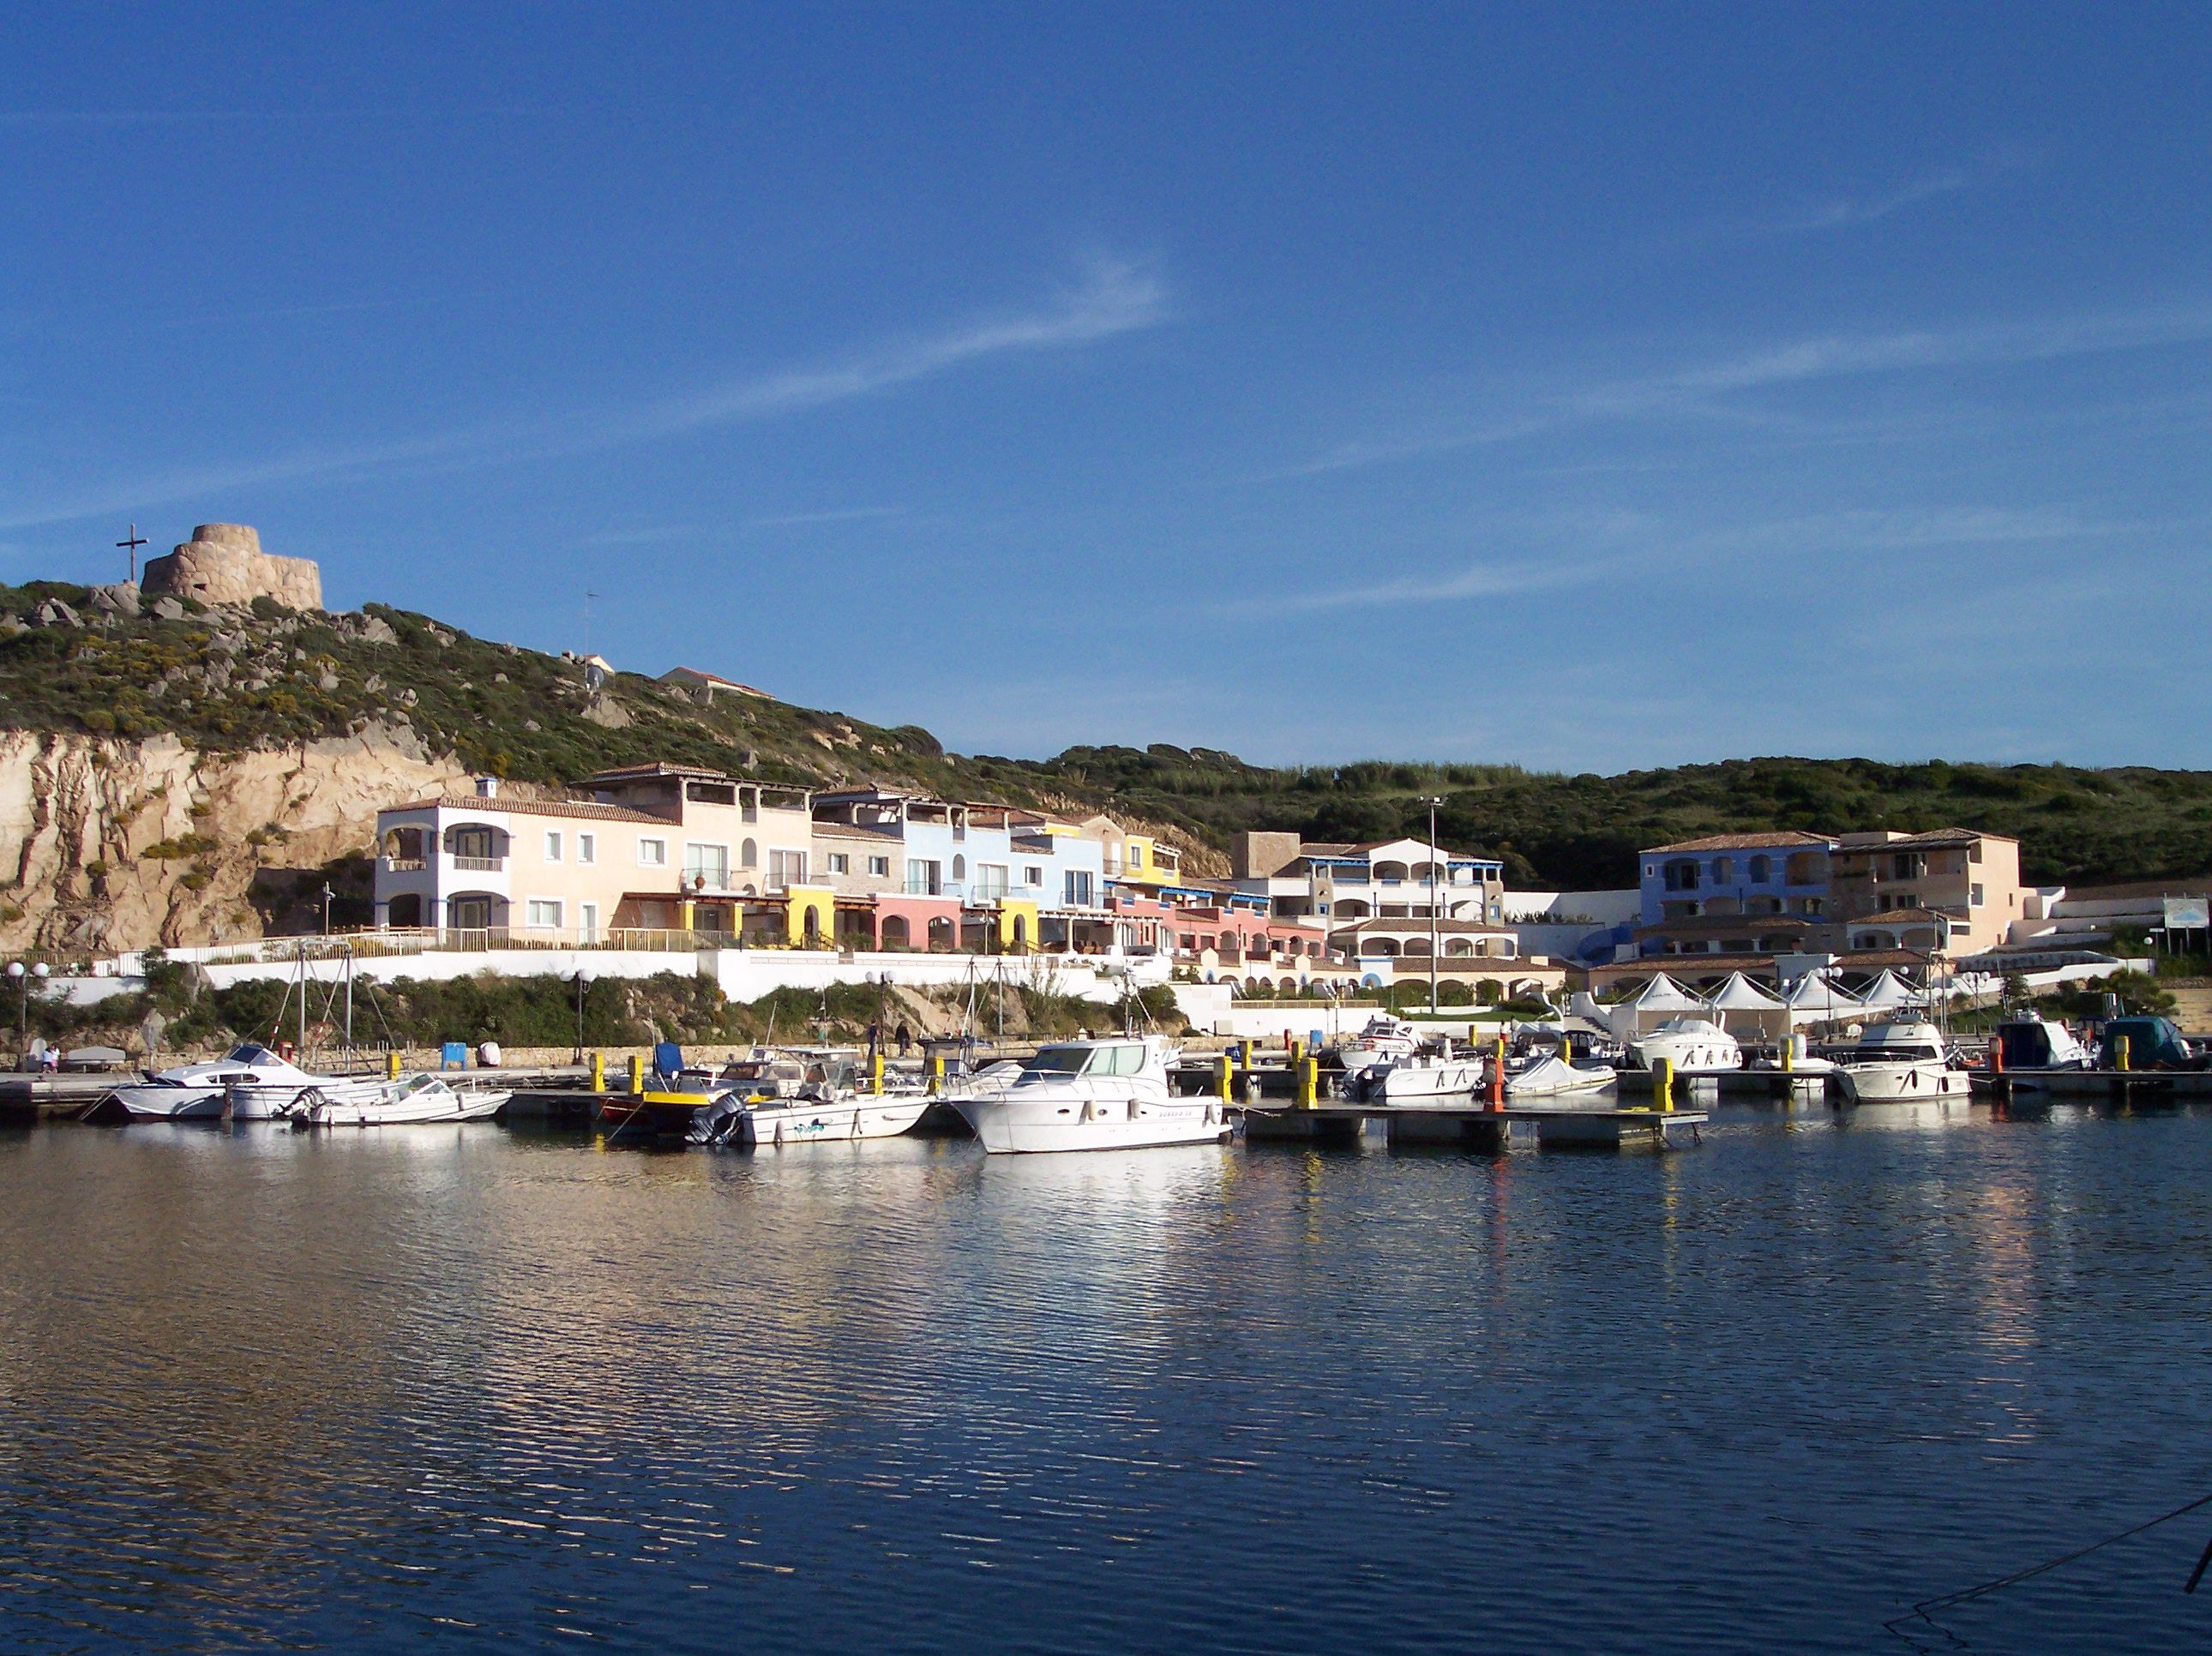 Imagen de la terminal de ferrys de Santa Teresa Gallura